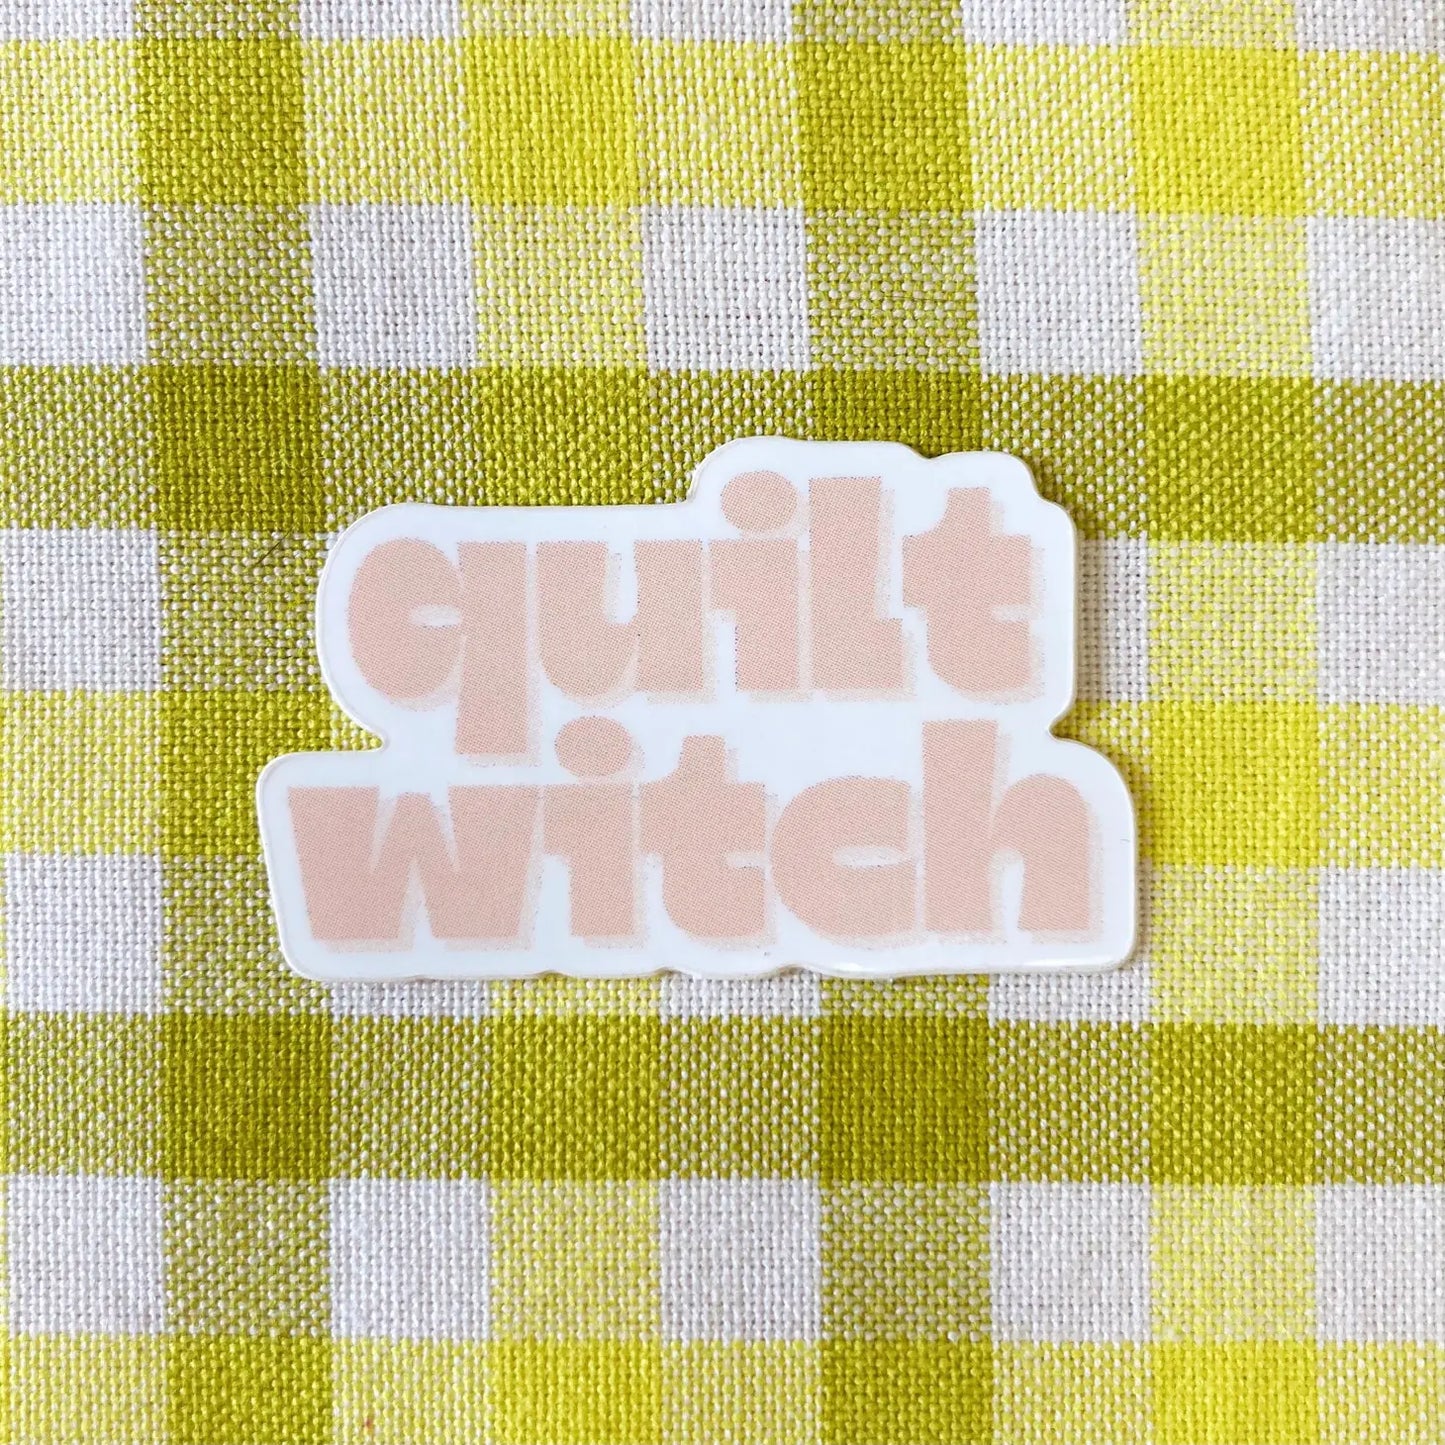 Quilt Witch ✿ Sticker ✿ Whipstitch Handmade